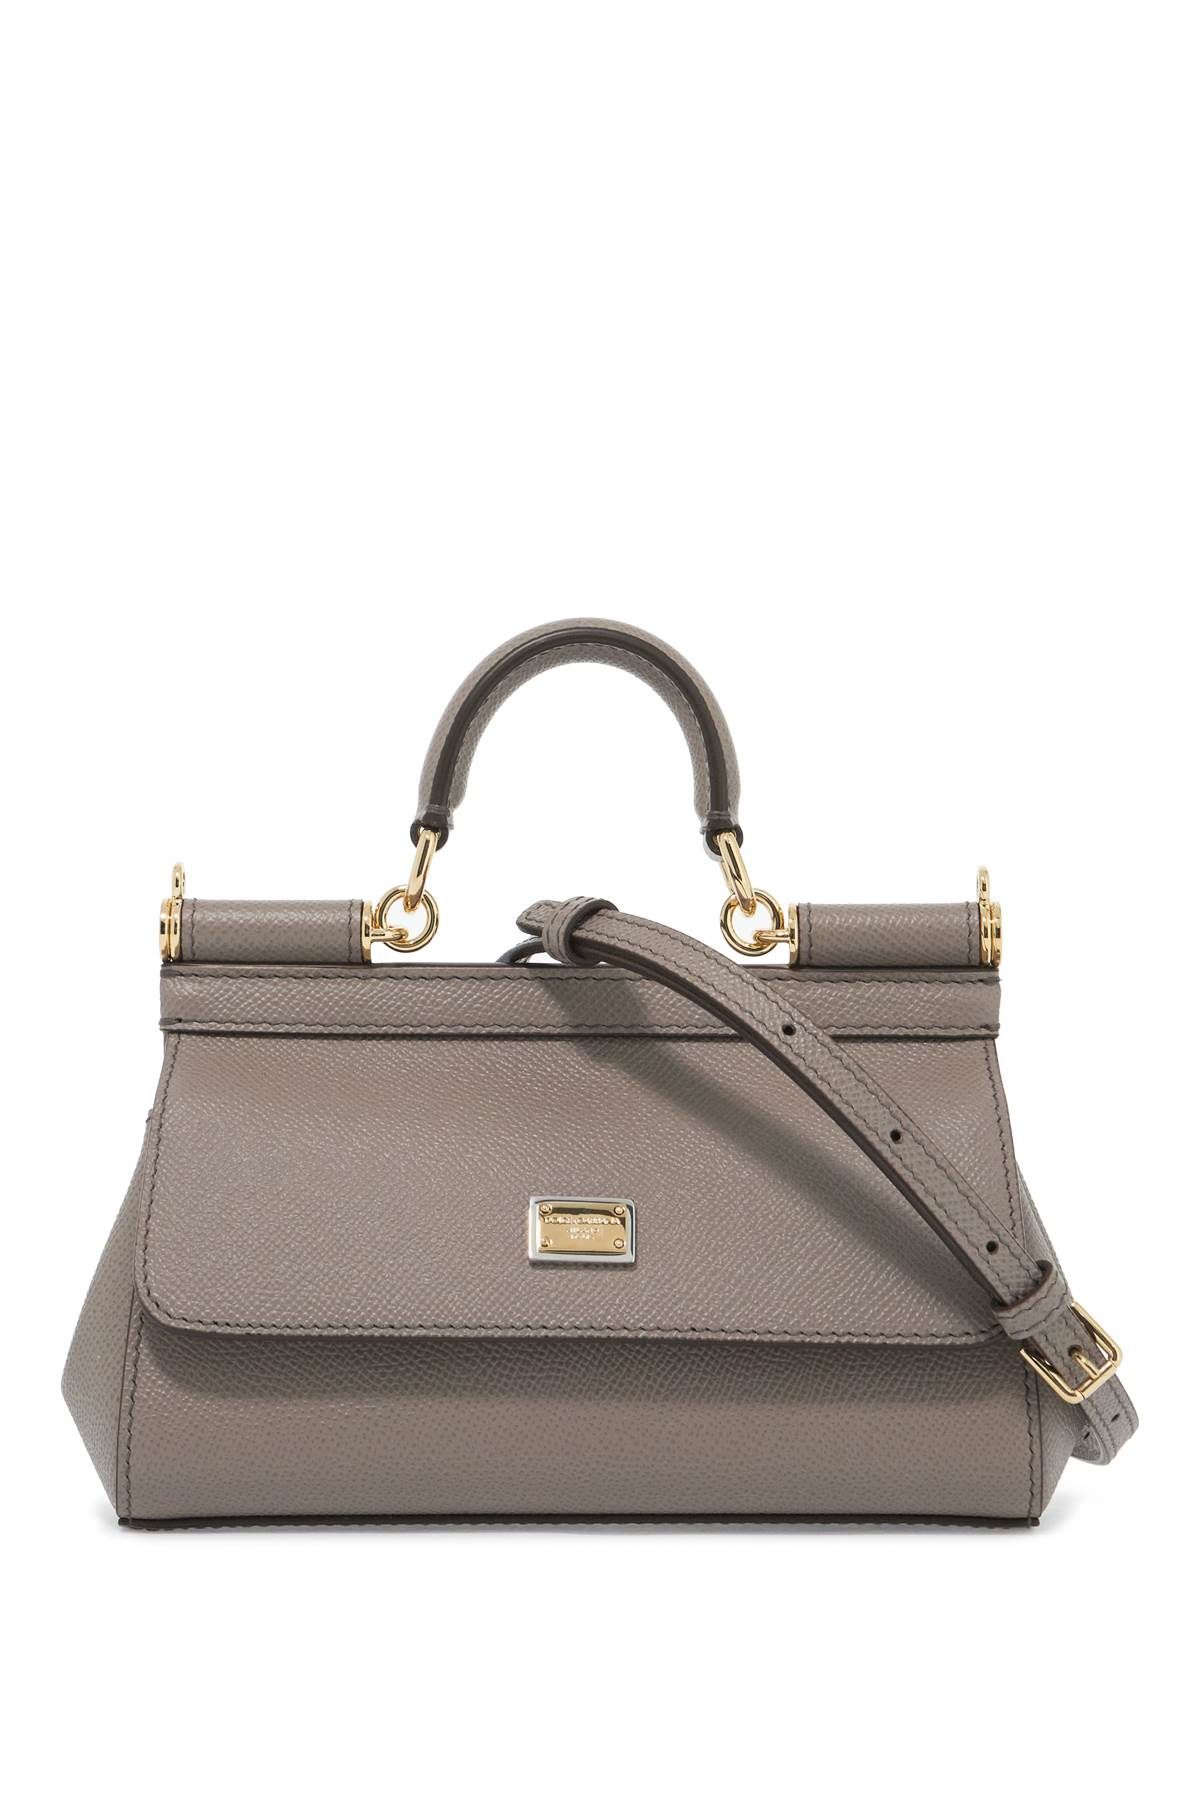 Dolce & Gabbana DOLCE & GABBANA sicily small handbag